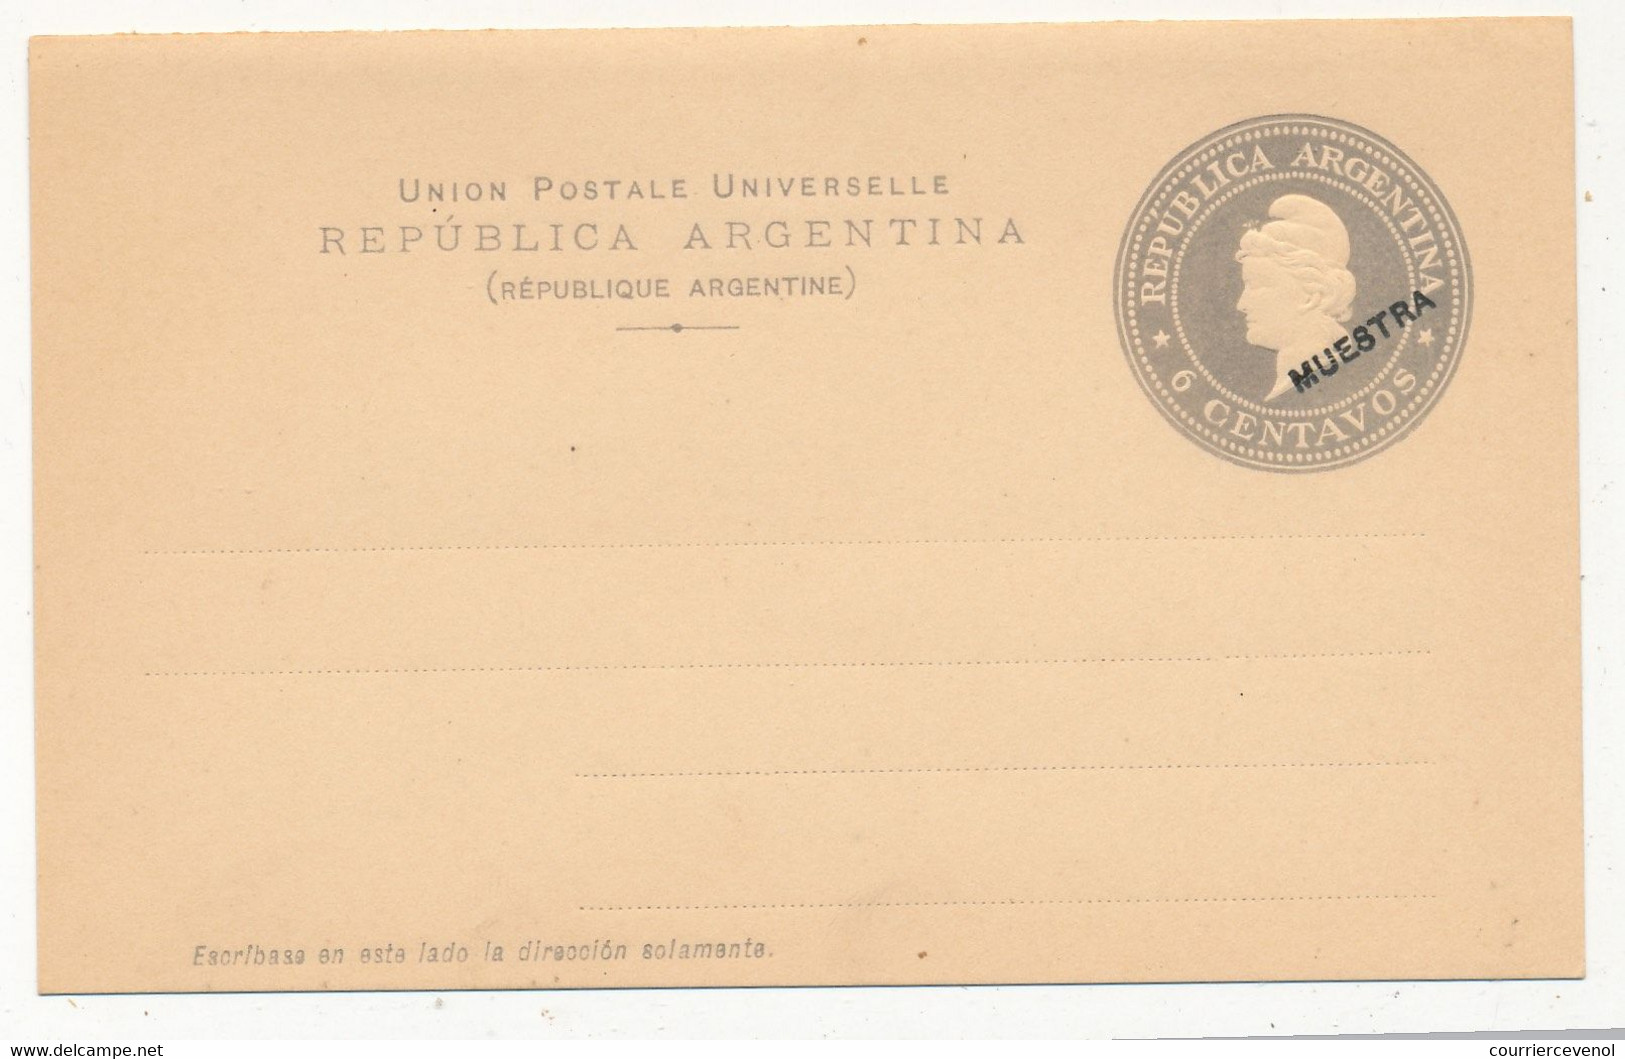 ARGENTINE - Entier Postal - Carte Postale - 6 Centavos (MUESTRA) - Non Illustrée - Postal Stationery